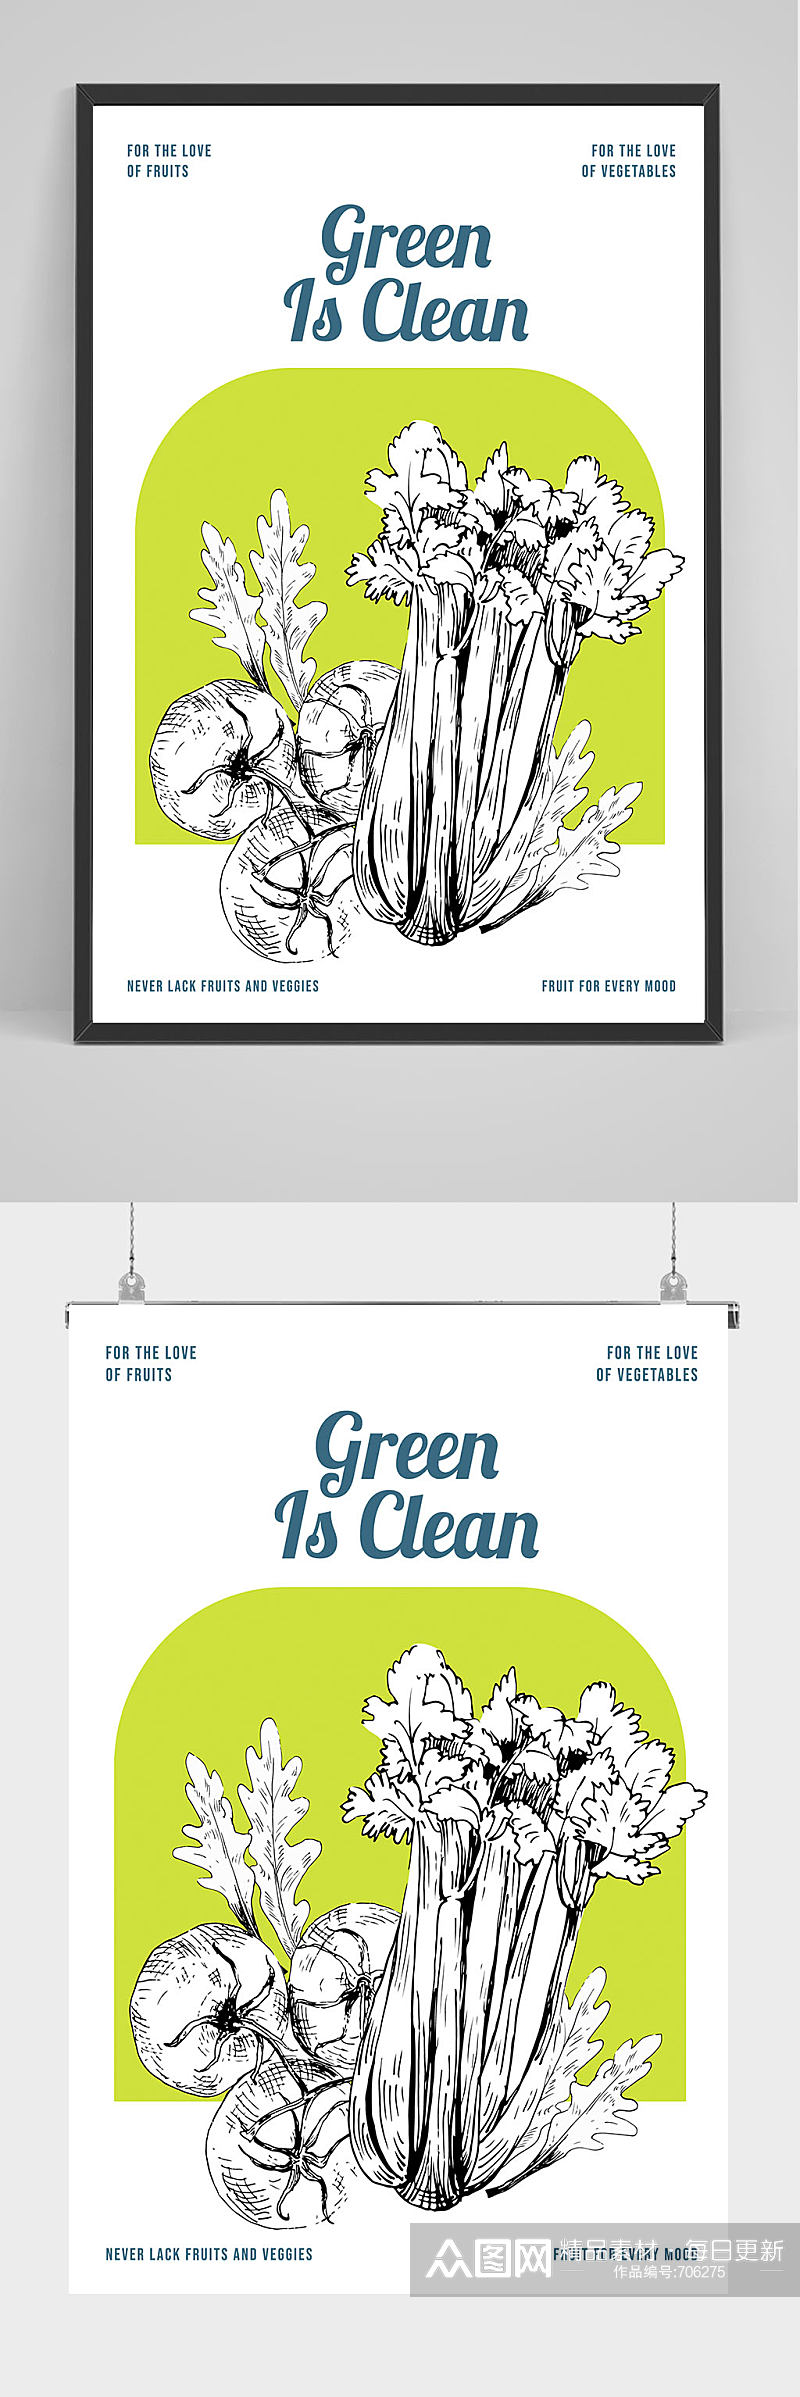 精品创意抽象蔬菜促销海报设计素材